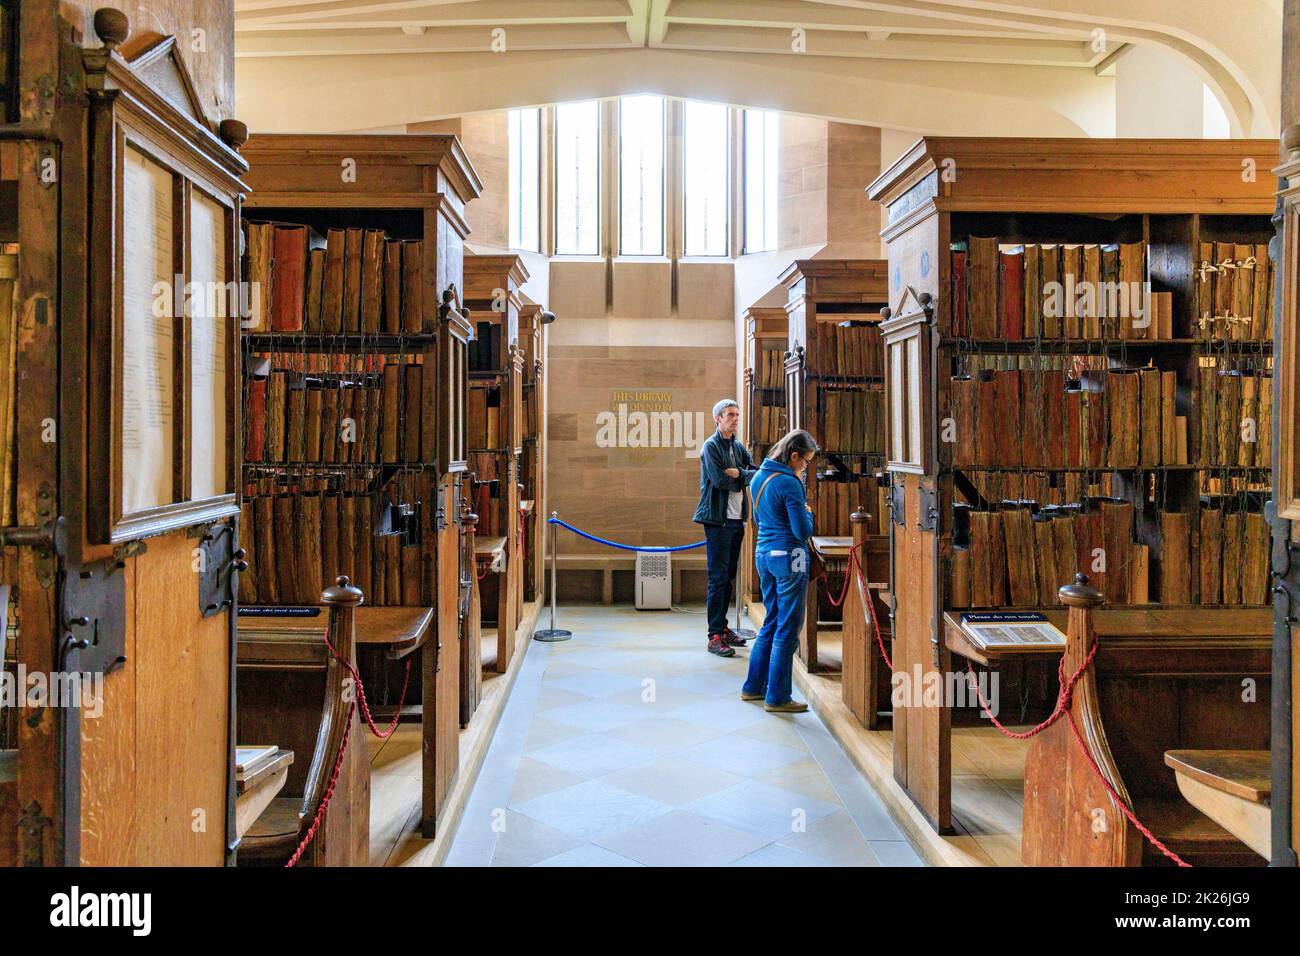 La bibliothèque chaînée de 17th siècles de la cathédrale de Hereford est le plus grand exemple survivant en Europe, Herefordshire, Angleterre, Royaume-Uni Banque D'Images